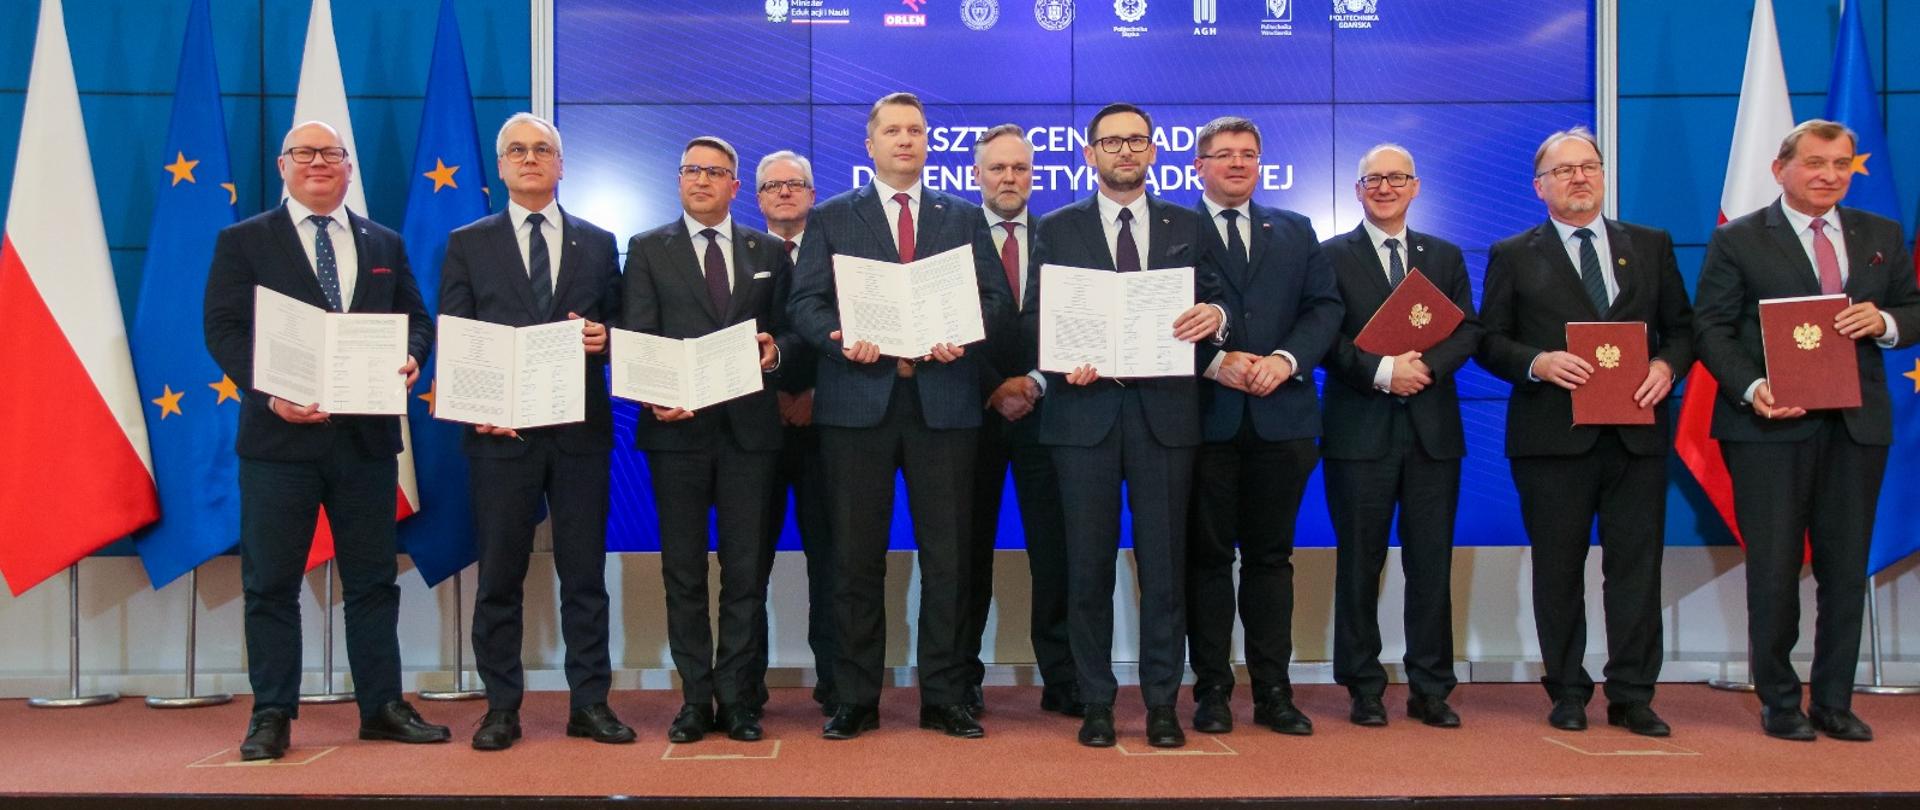 Grupa mężczyzn w garniturach stoi w rzędzie przed niebieską ścianą, trzymają w rękach dokumenty, za nimi z lewej flagi Polski i UE.